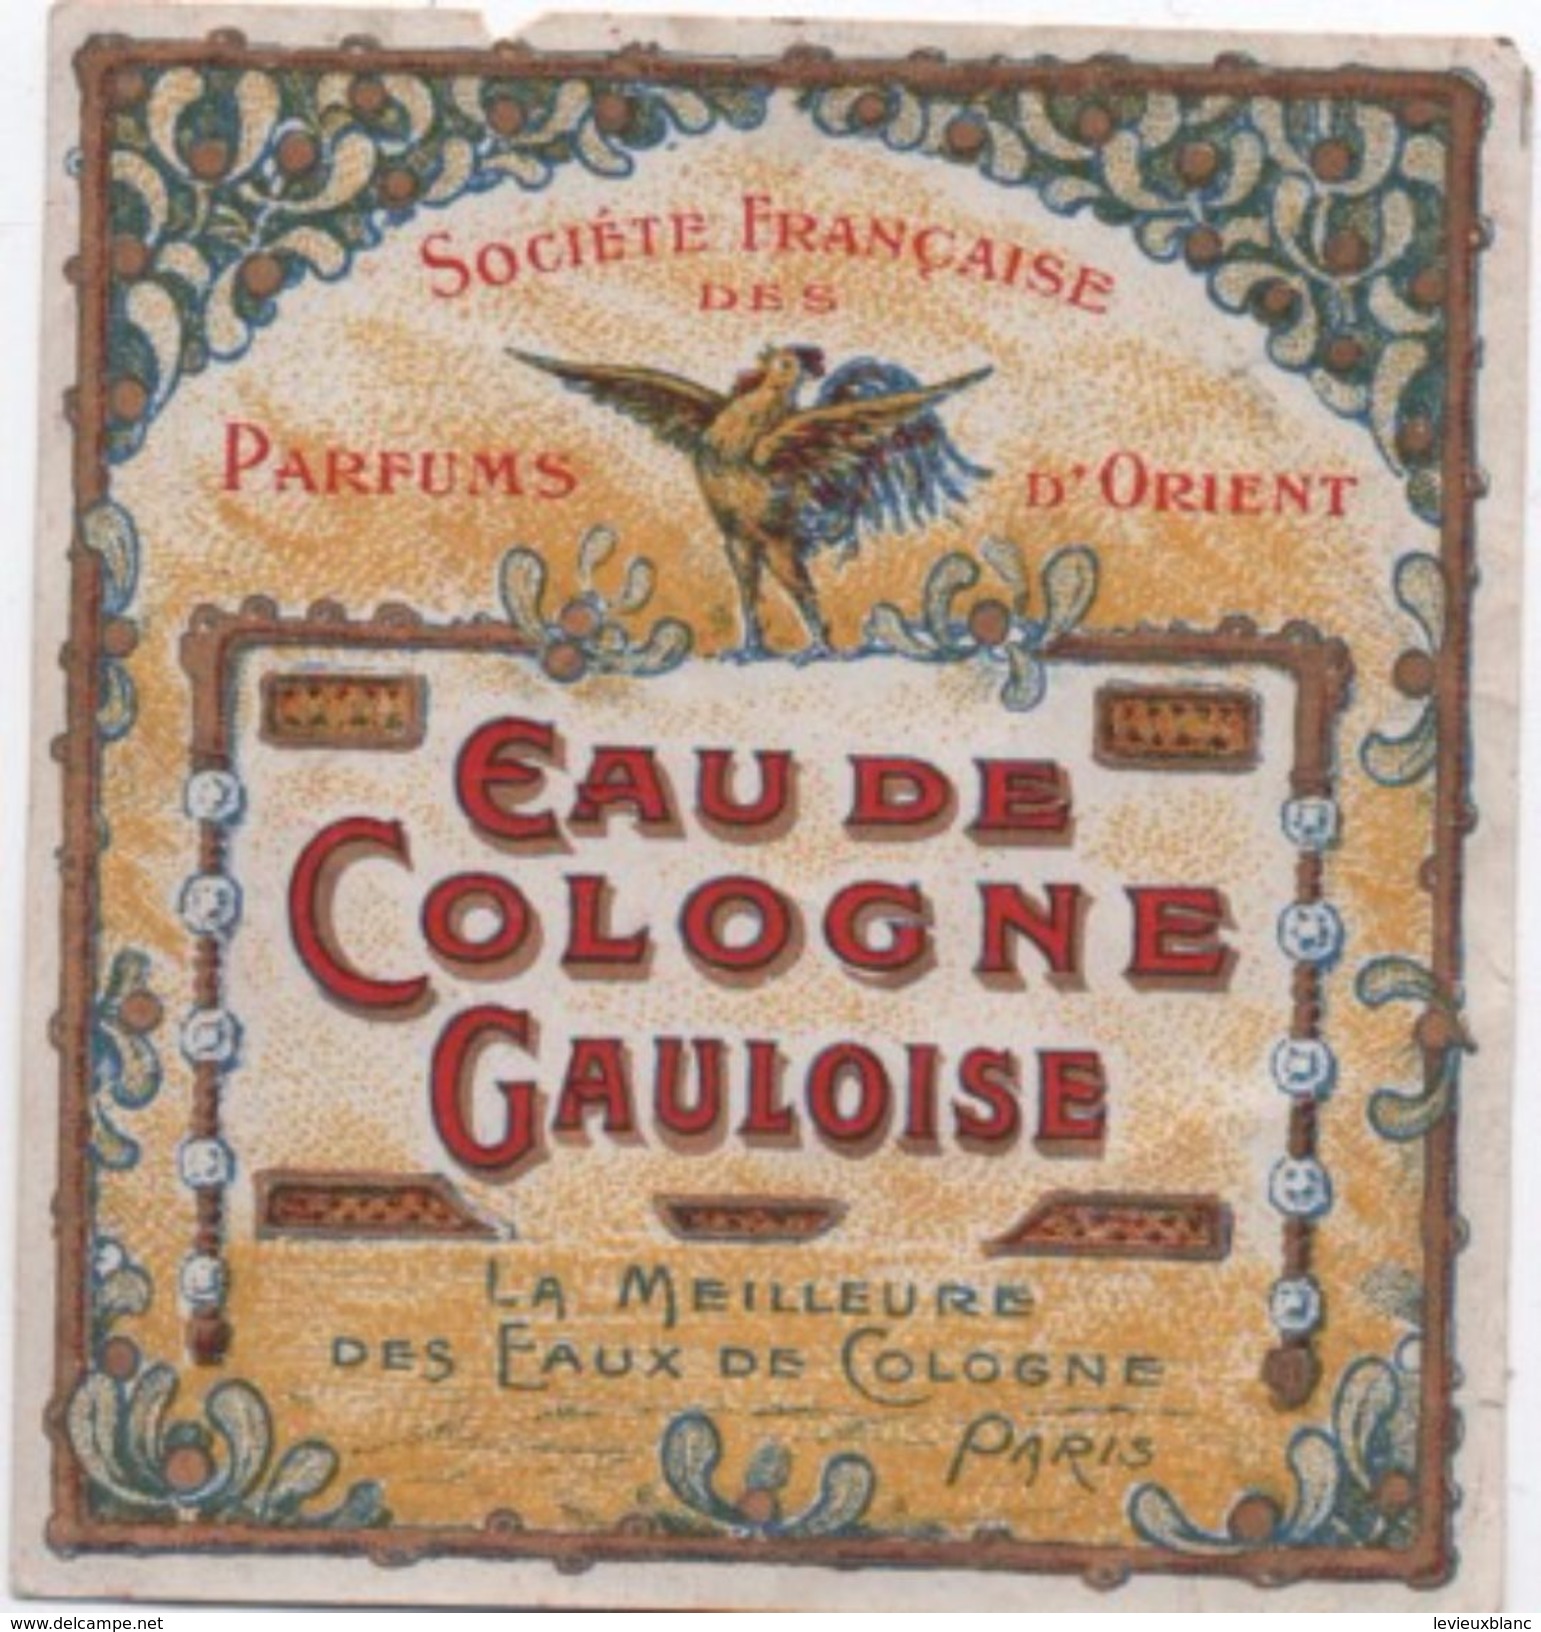 Etiquette/Eau De Cologne Gauloise /Société Française Des Parfums D'Orient/La Meilleure /PARIS//1920-1930   PARF102 - Etiquetas